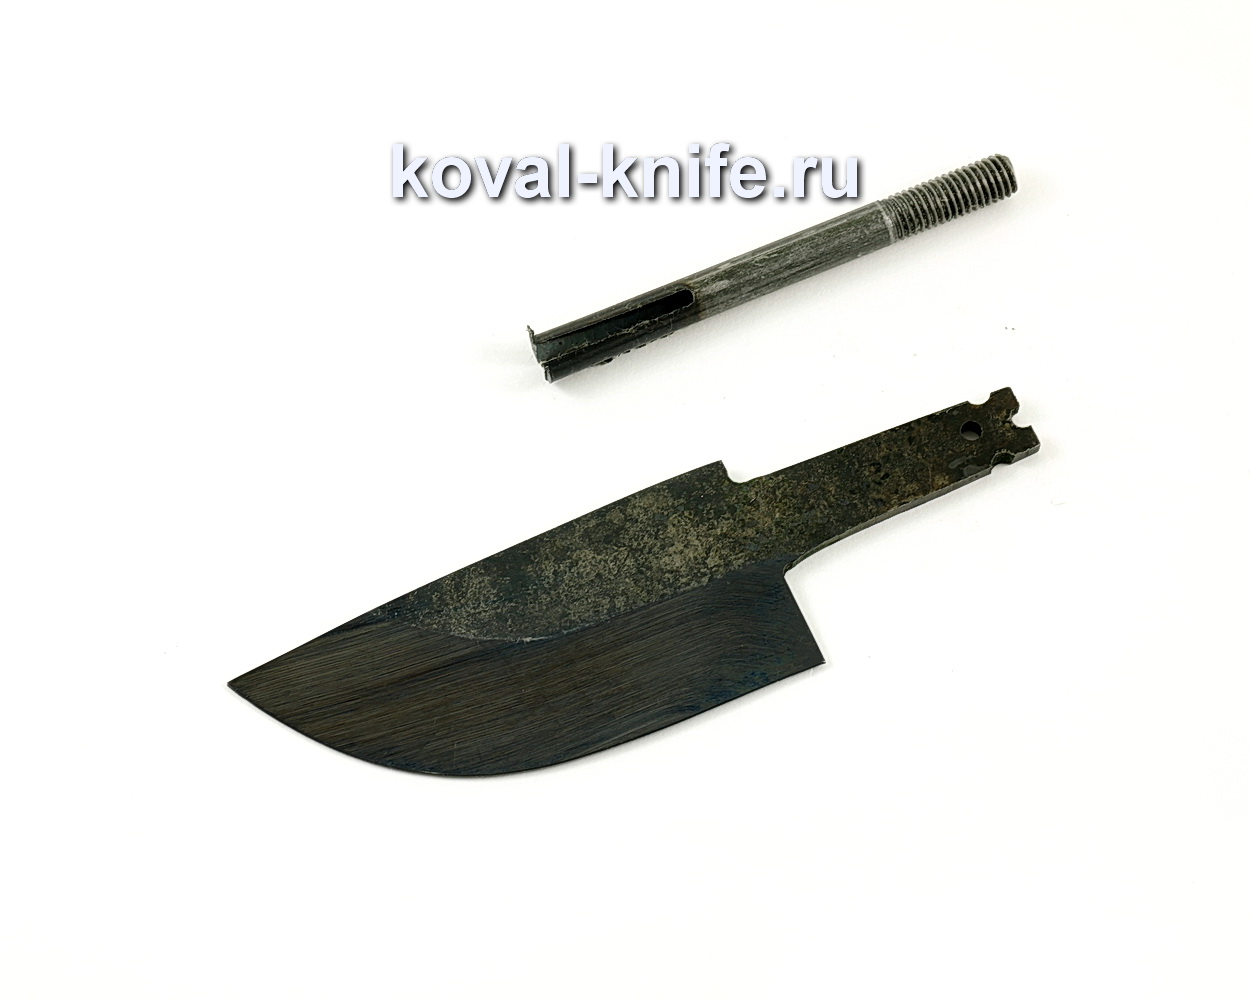 Клинок для ножа Скин (кованая У10А)